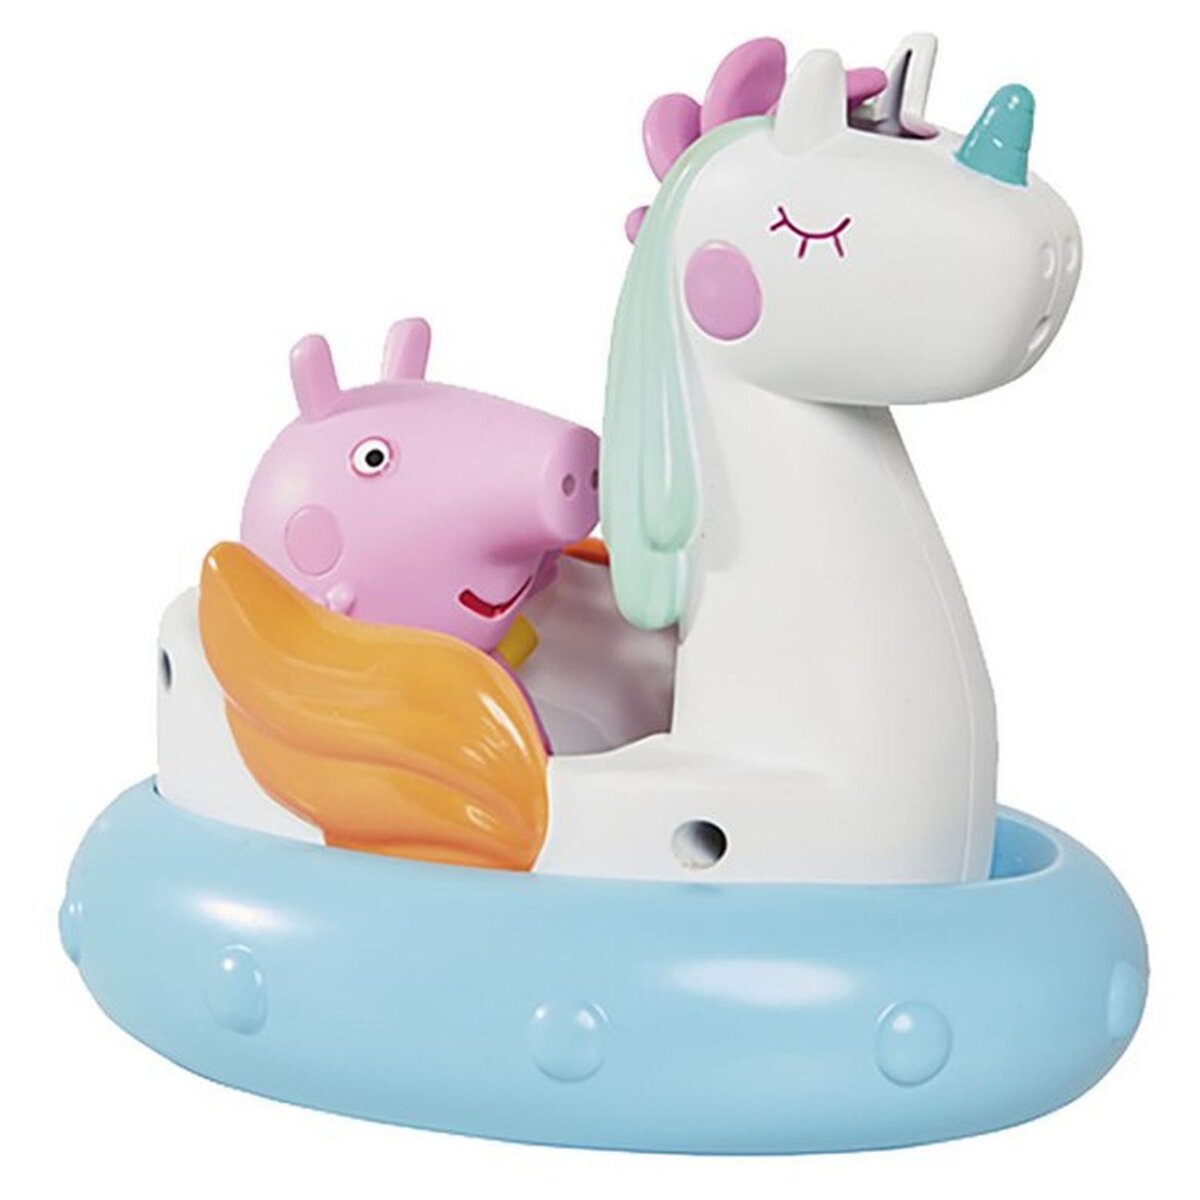 Bateau pour le bain «Peppa Pig» TOMY, Jeux & jouets